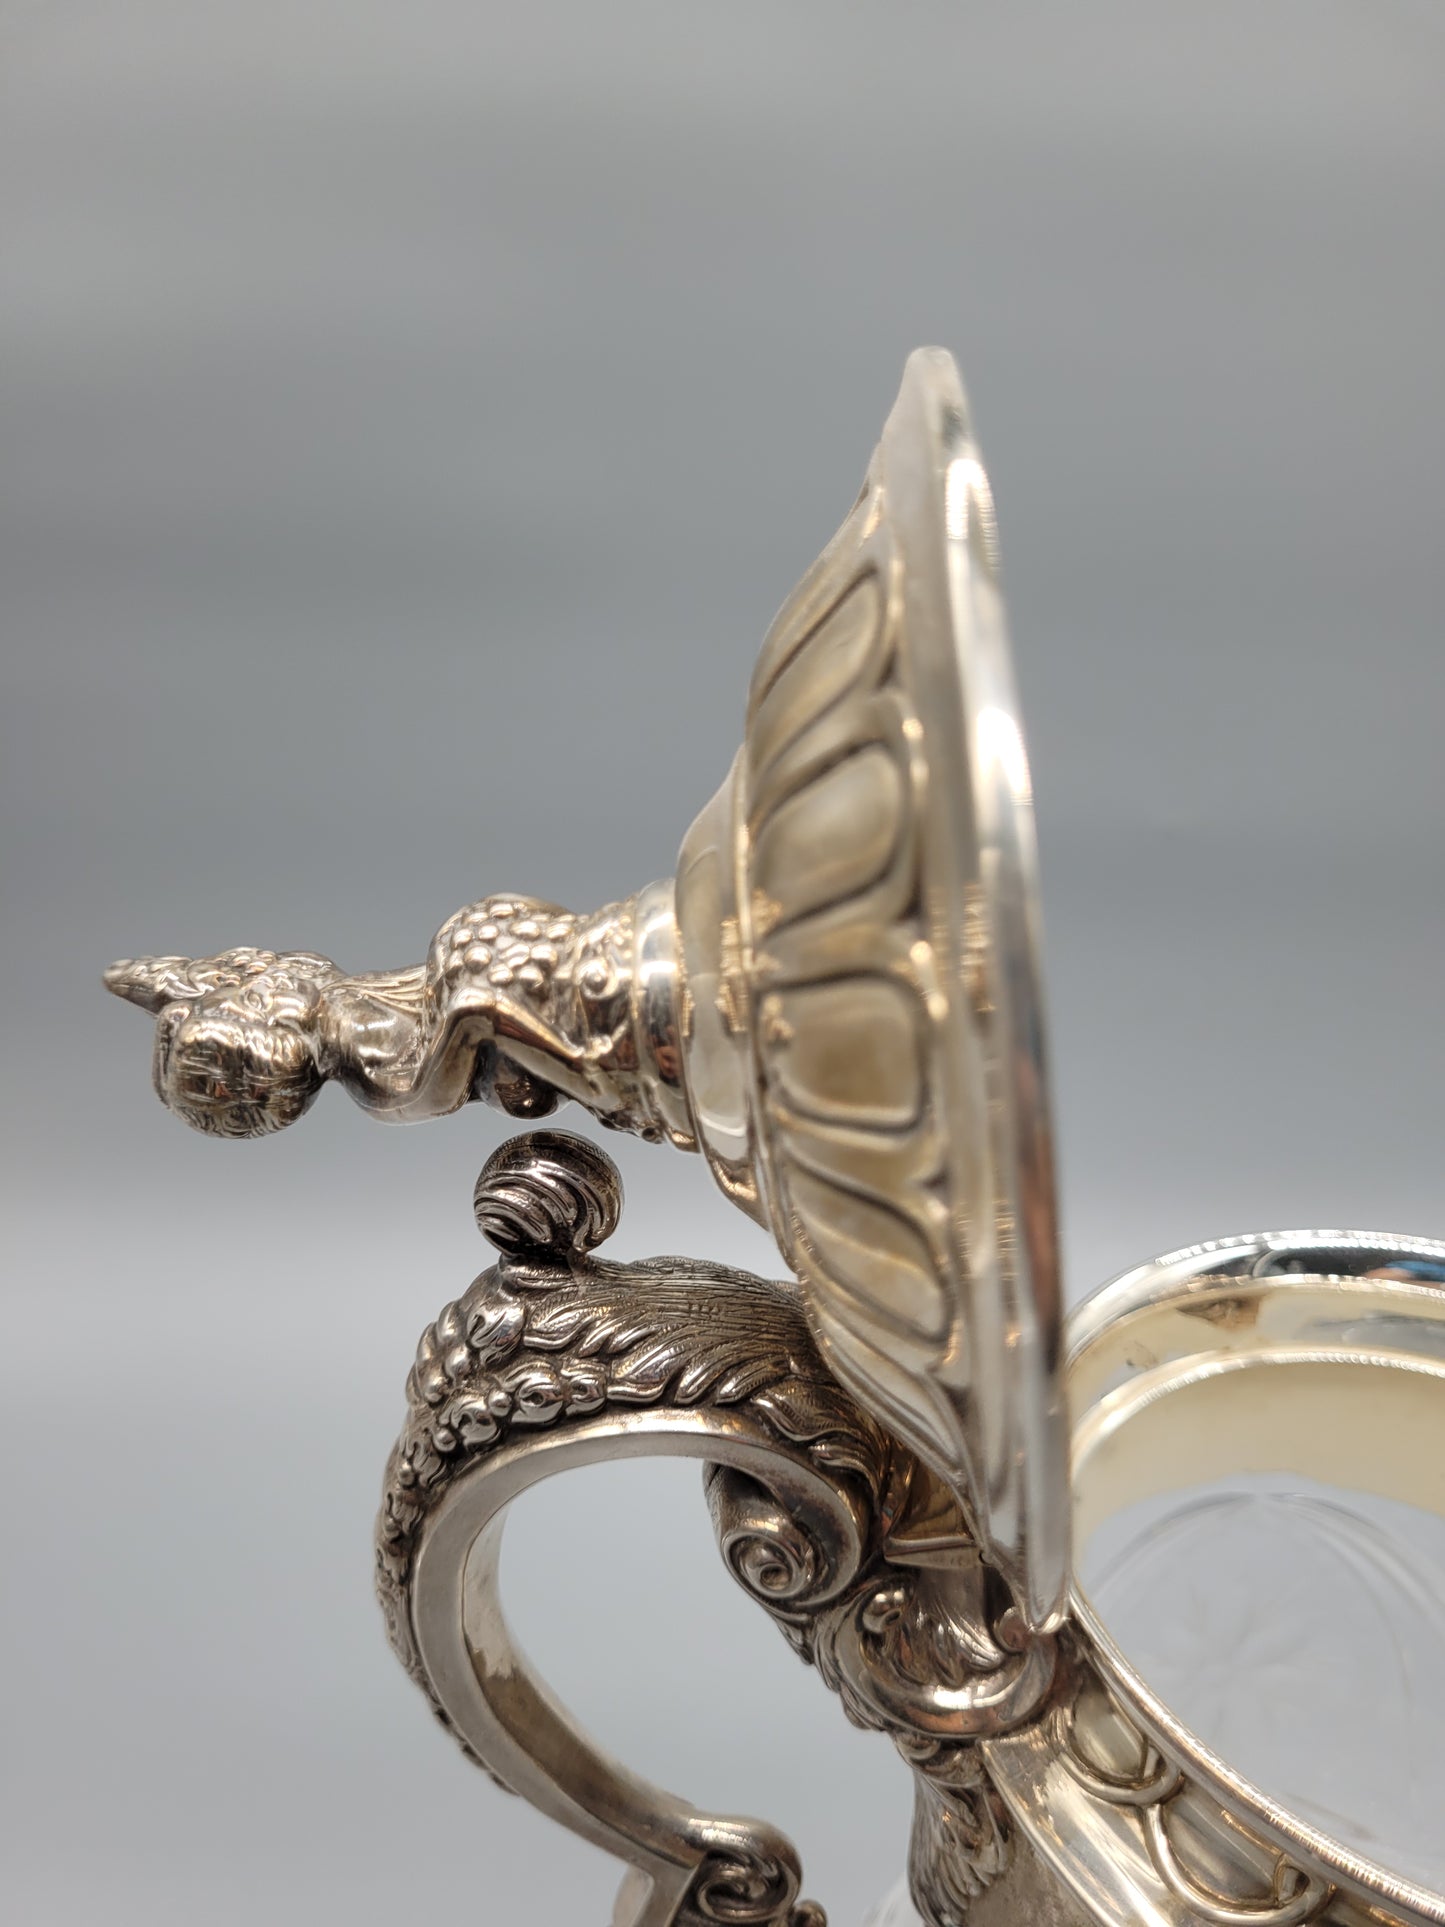 Exquisite viktorianische Silberkanne - 925 Sterling Silber